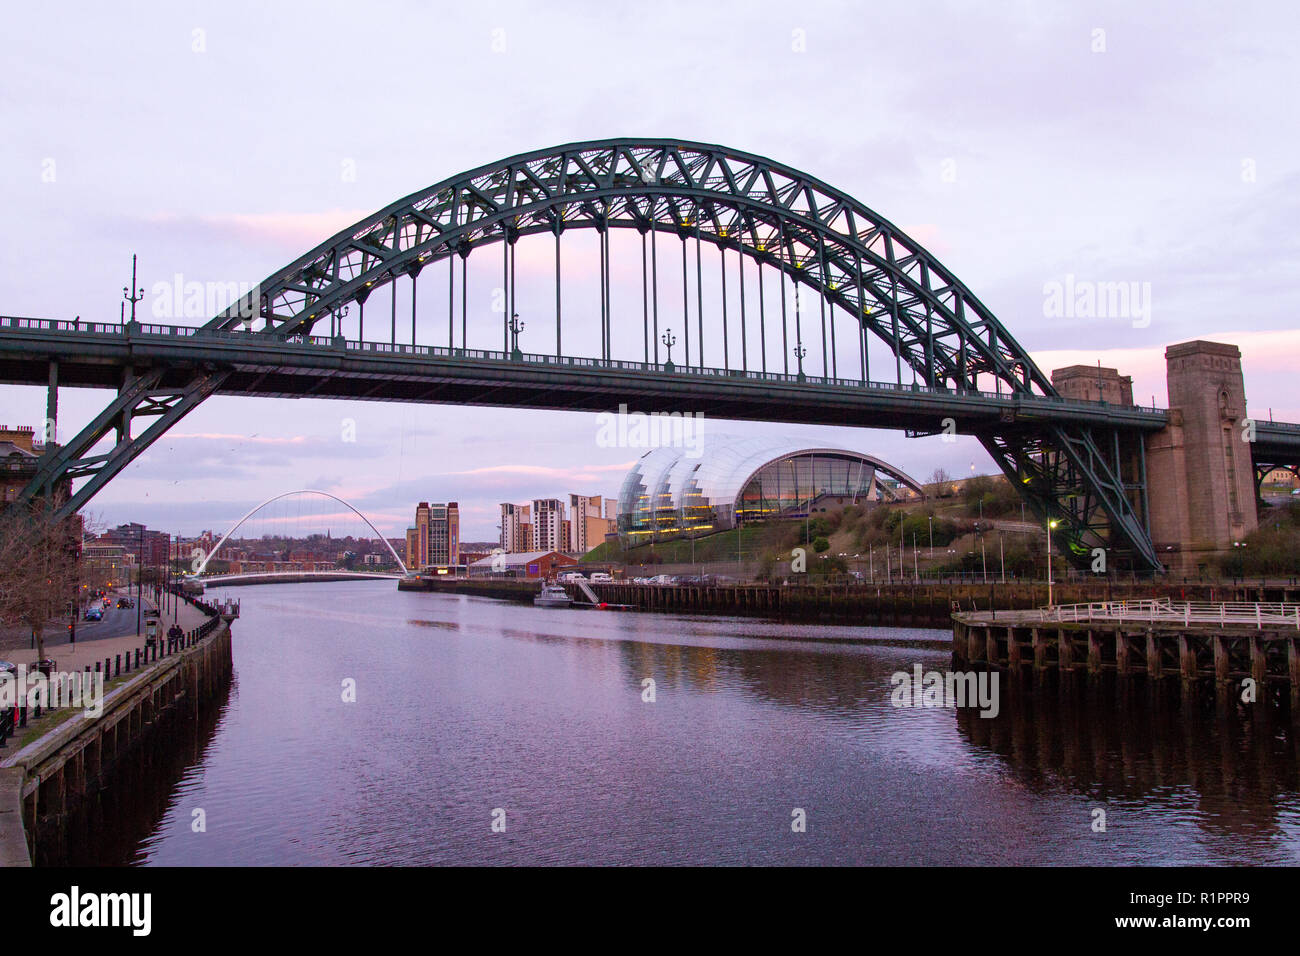 Newcastle upon Tyne : Tyne vue du pont tournant, avec pont Tyne et Gateshead Sage au crépuscule avec coucher de soleil pourpre Banque D'Images